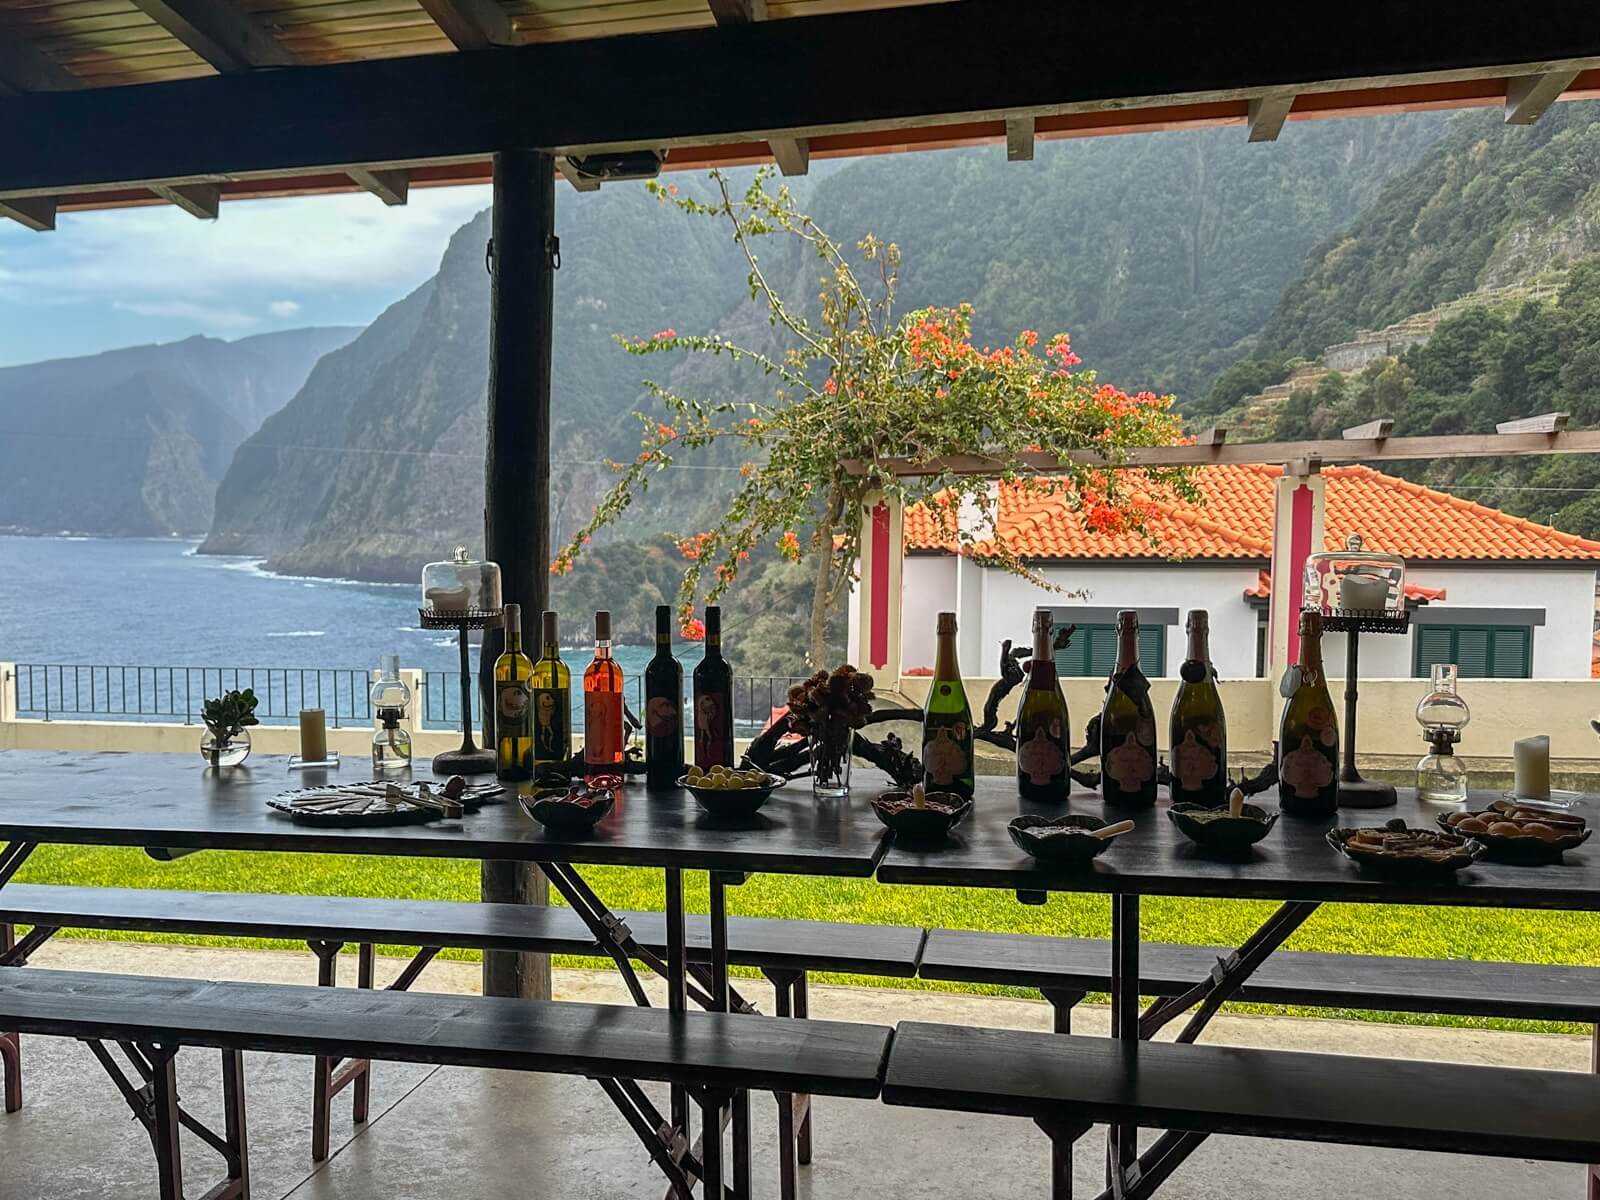 Los Verdaderos Sabores y Belleza Natural de las Islas de Madeira - Terras do Avo cata de vinos